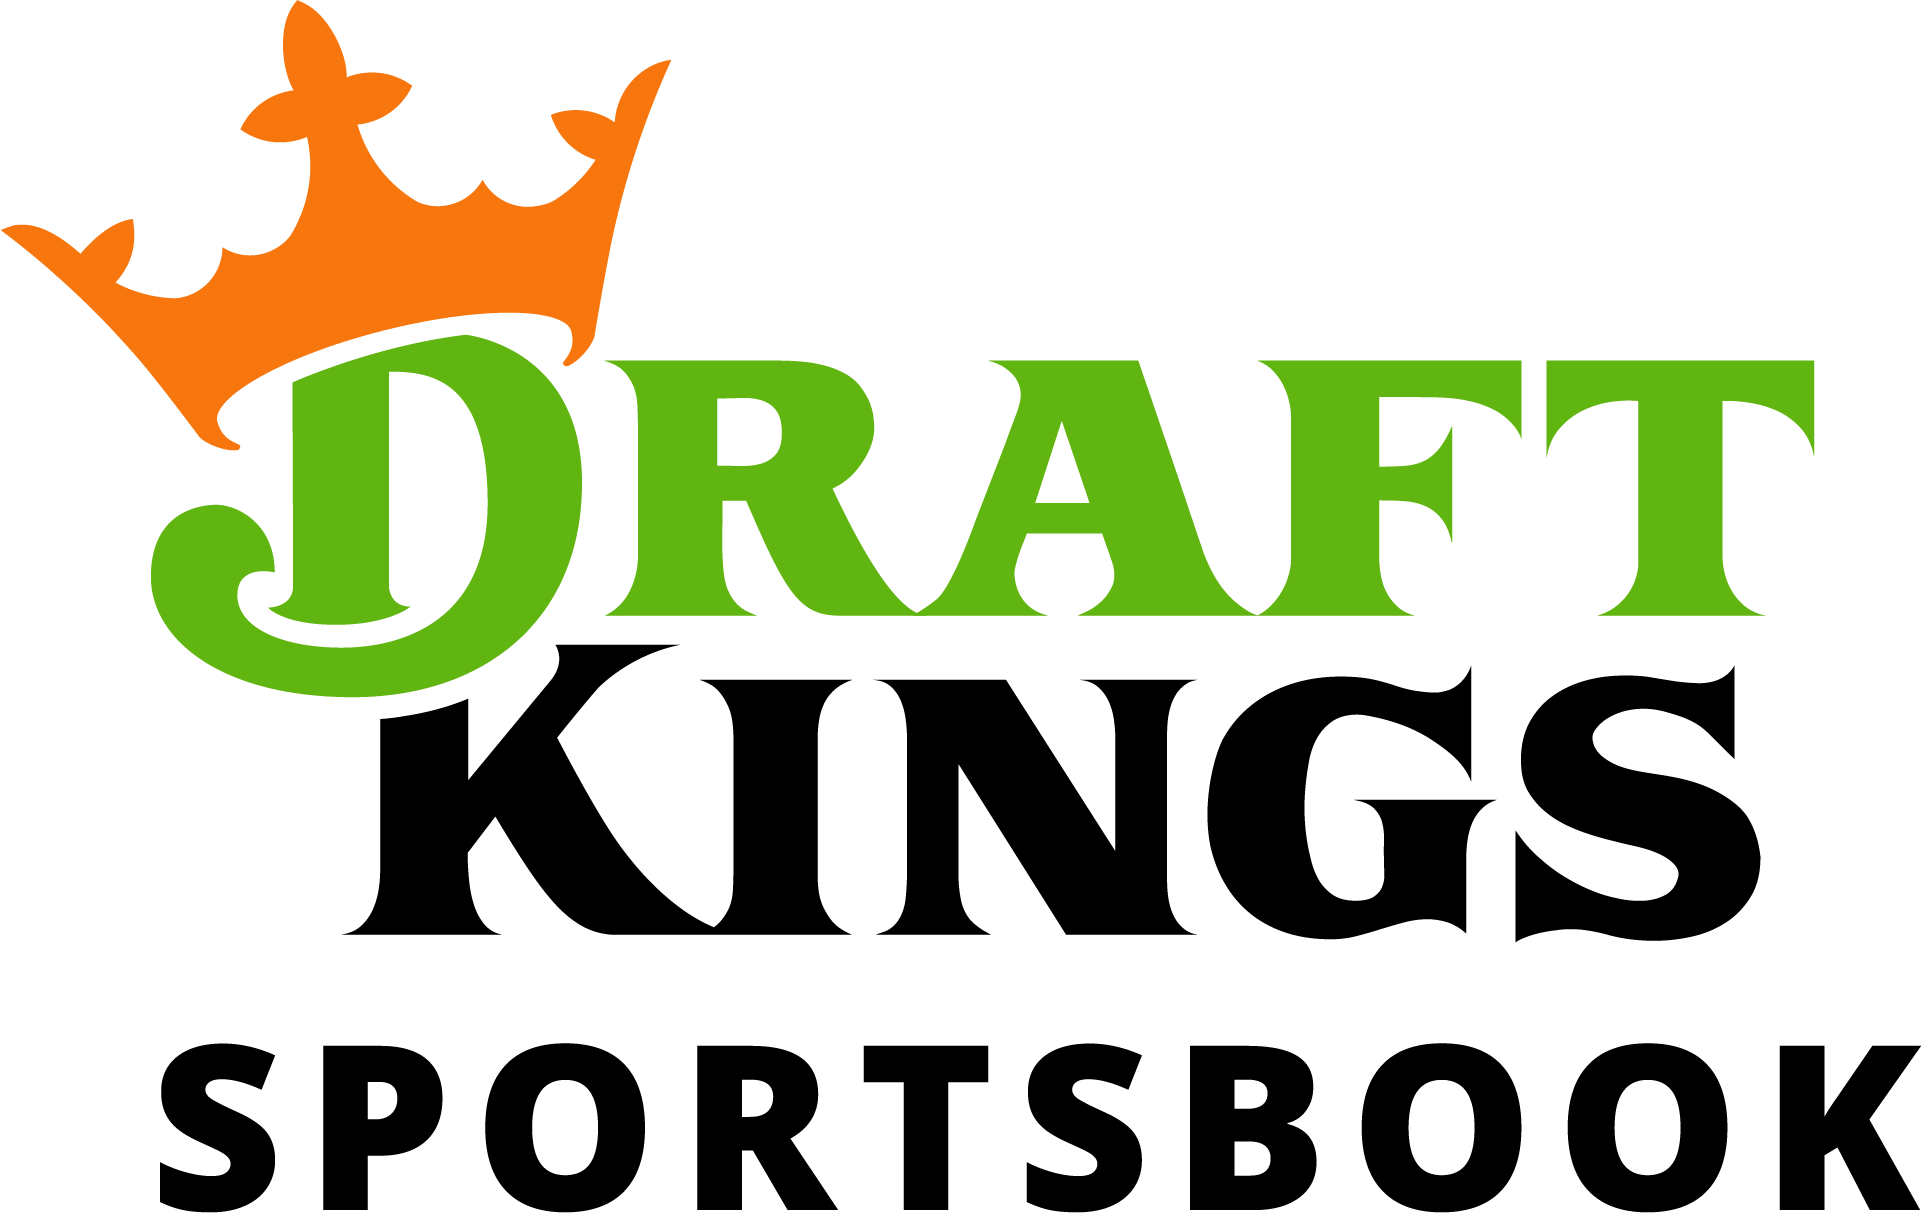 draftkings sportsbook promo code